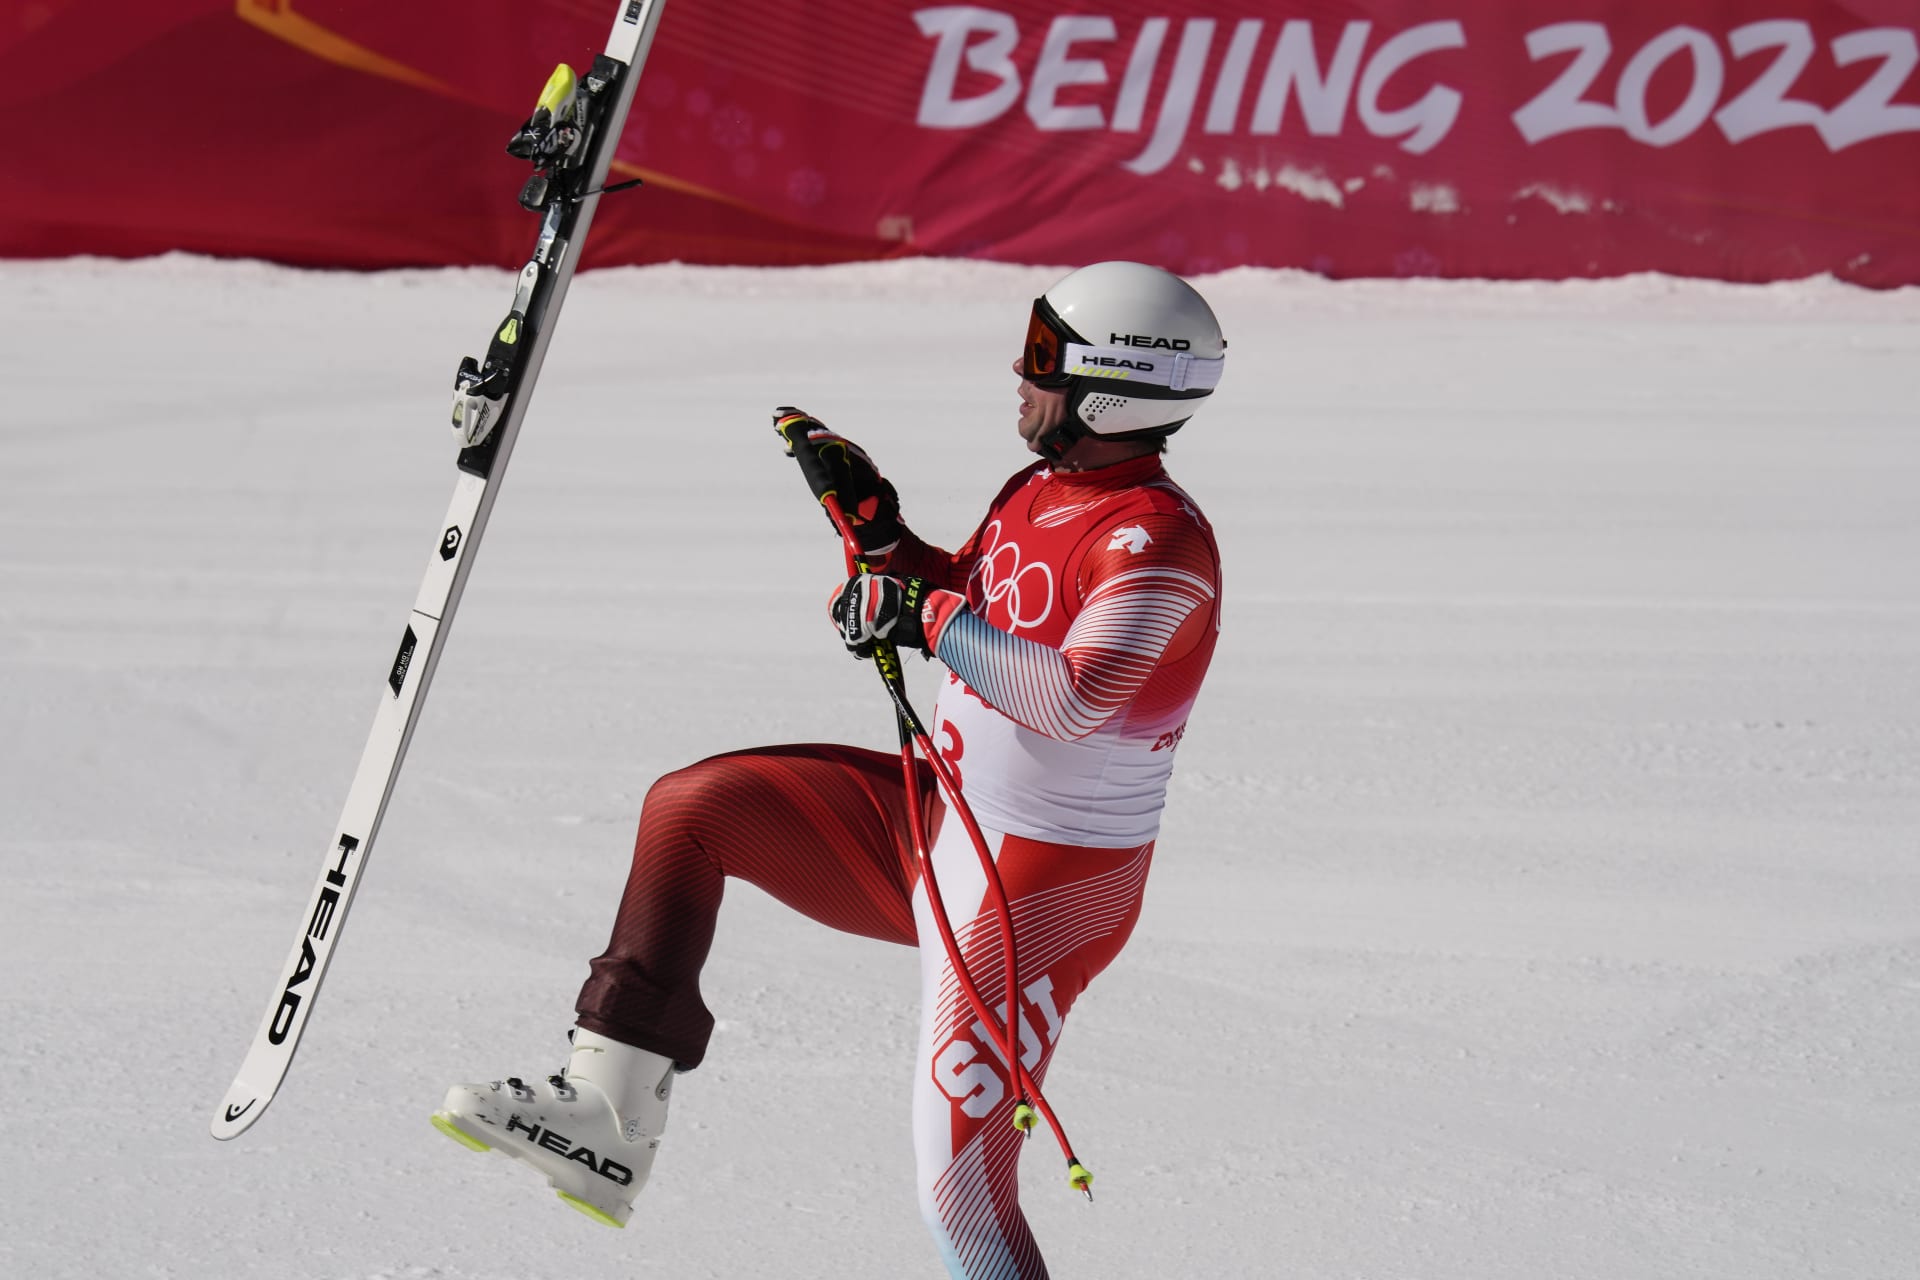 Švýcarský sjezdař Beat Feuz chytá vykopnutou lyži v cíli olympijského závodu 2022 a vzdává tím holt svému krajanovi Didieru Cuchemu, mistru světa v super-G a stříbrnému na olympiádě 1998 v Naganu. 